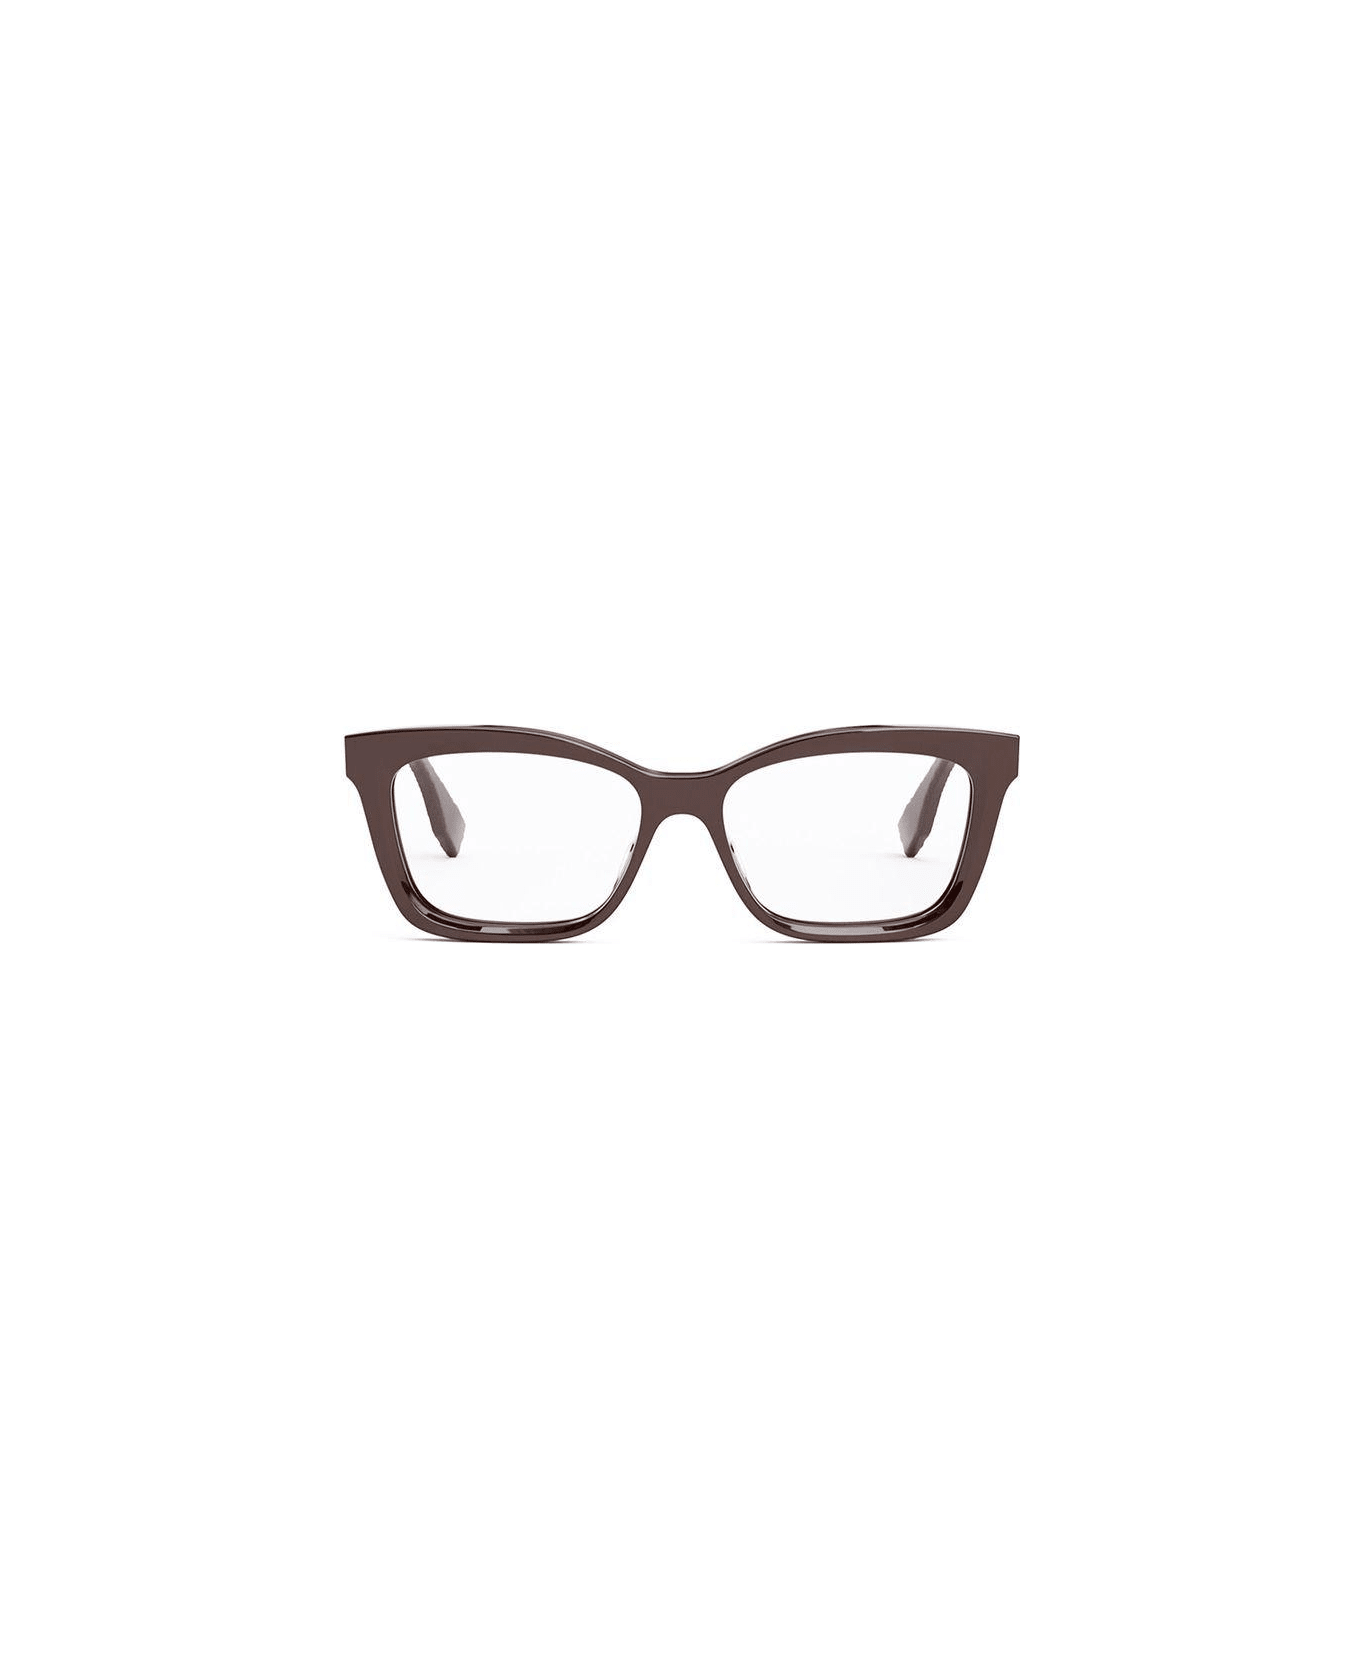 Fendi Eyewear Rectangle Frame Glasses - 066 アイウェア